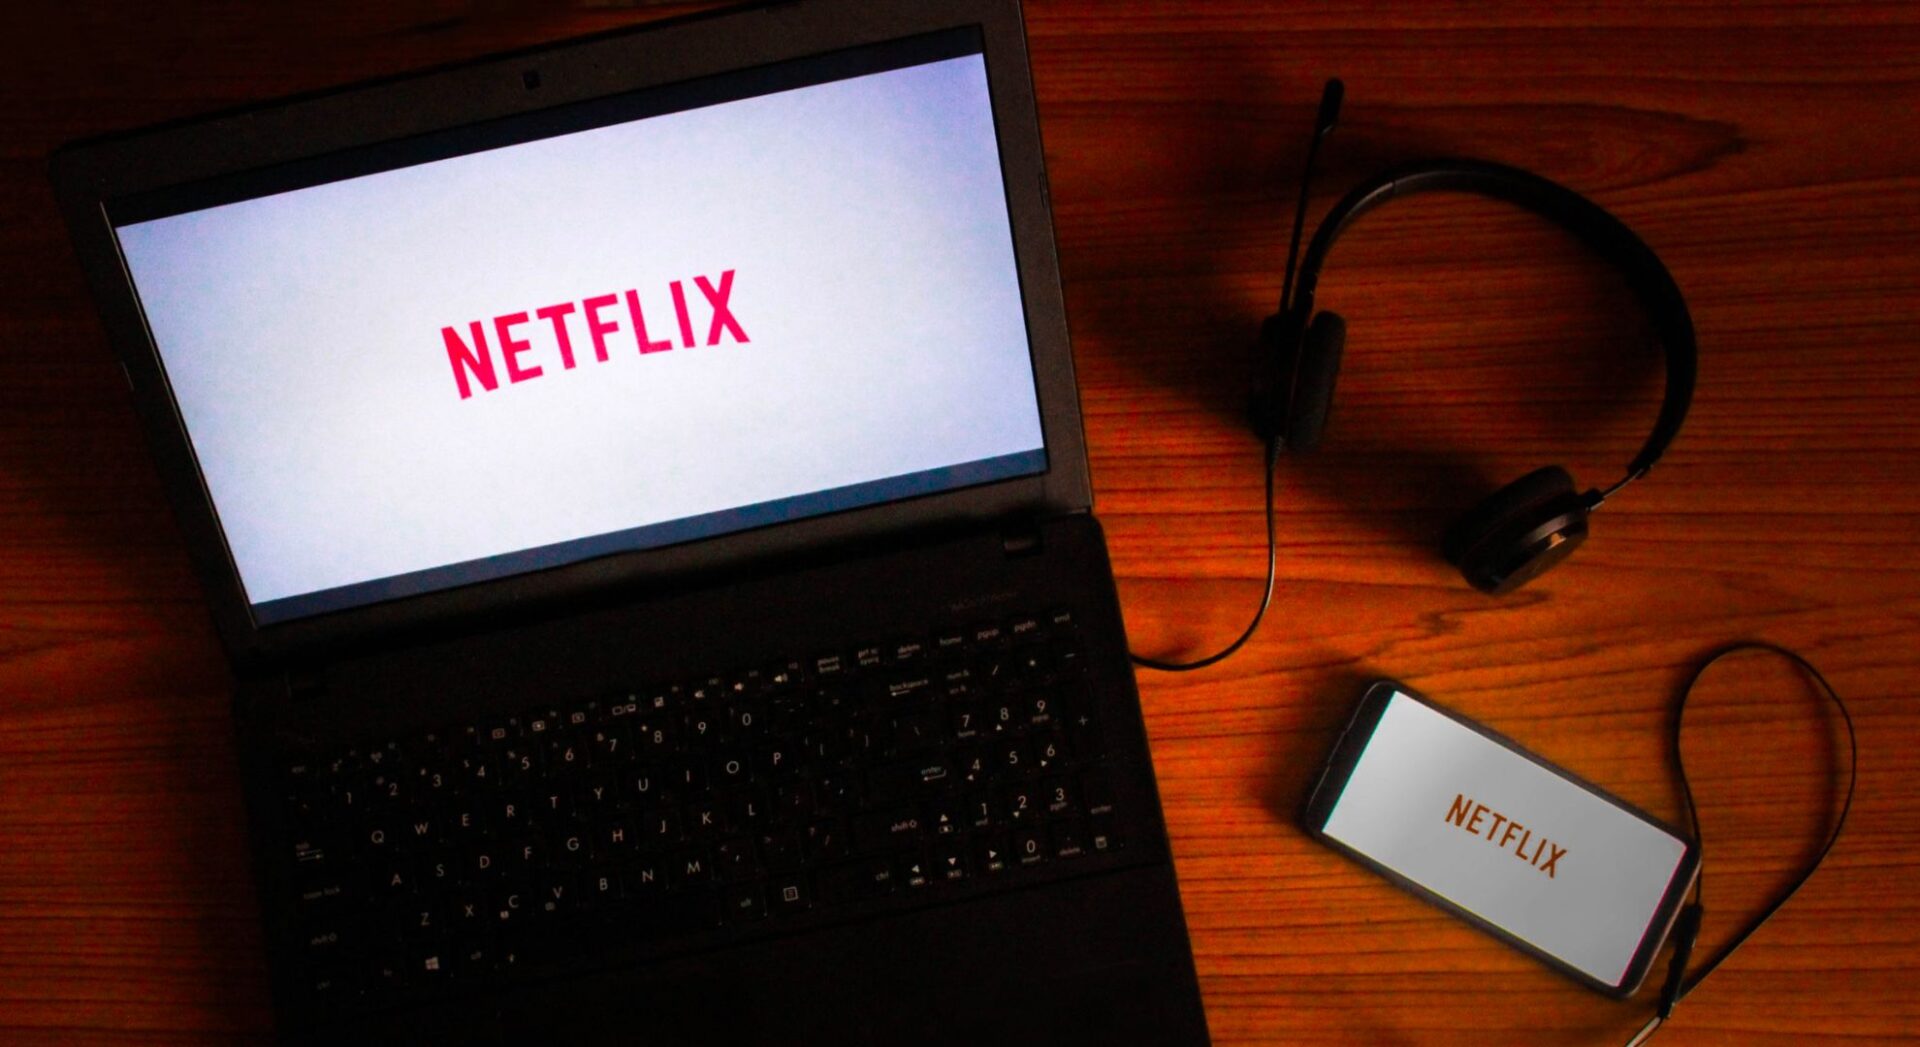 Netflix เตรียมเริ่มระบบป้องกันการหารบัญชี ในหลายประเทศภายในกรกฎาคมนี้